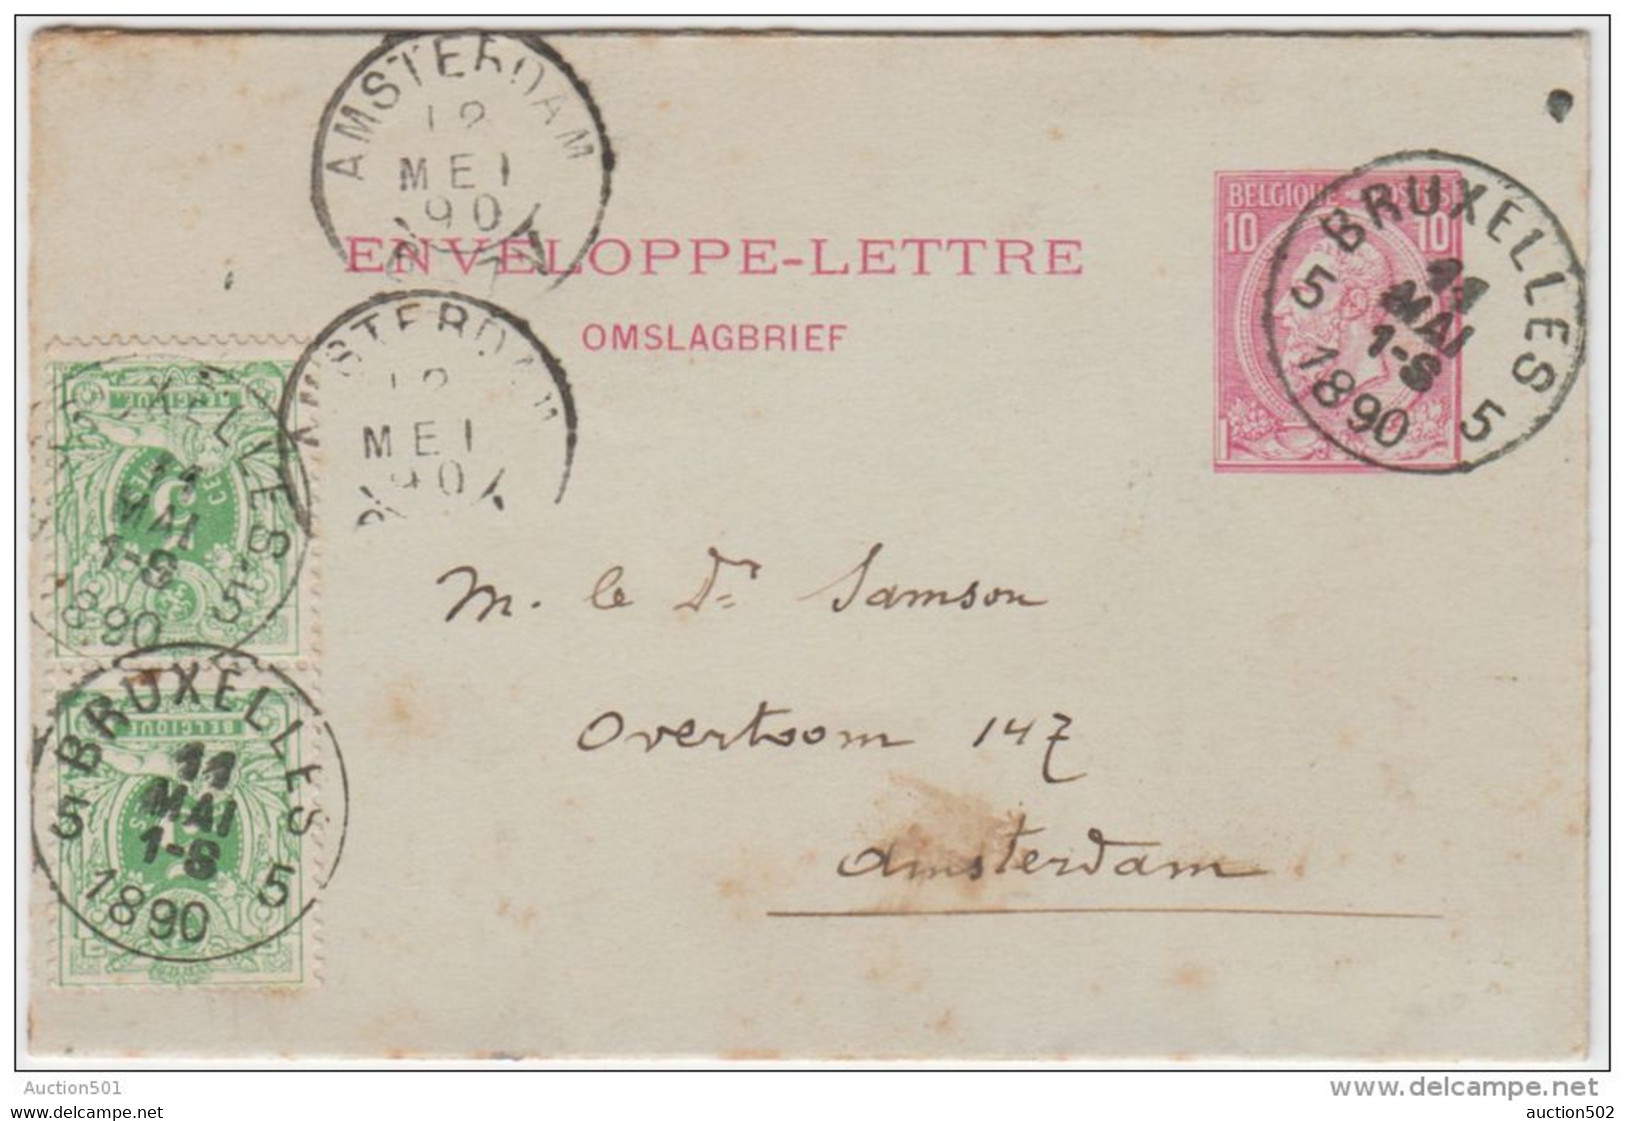 01933a Bruxelles 5 1890 Env. Lettre 1 TP 45 (2) V. Amsterdam C. Arrivée - Buste-lettere